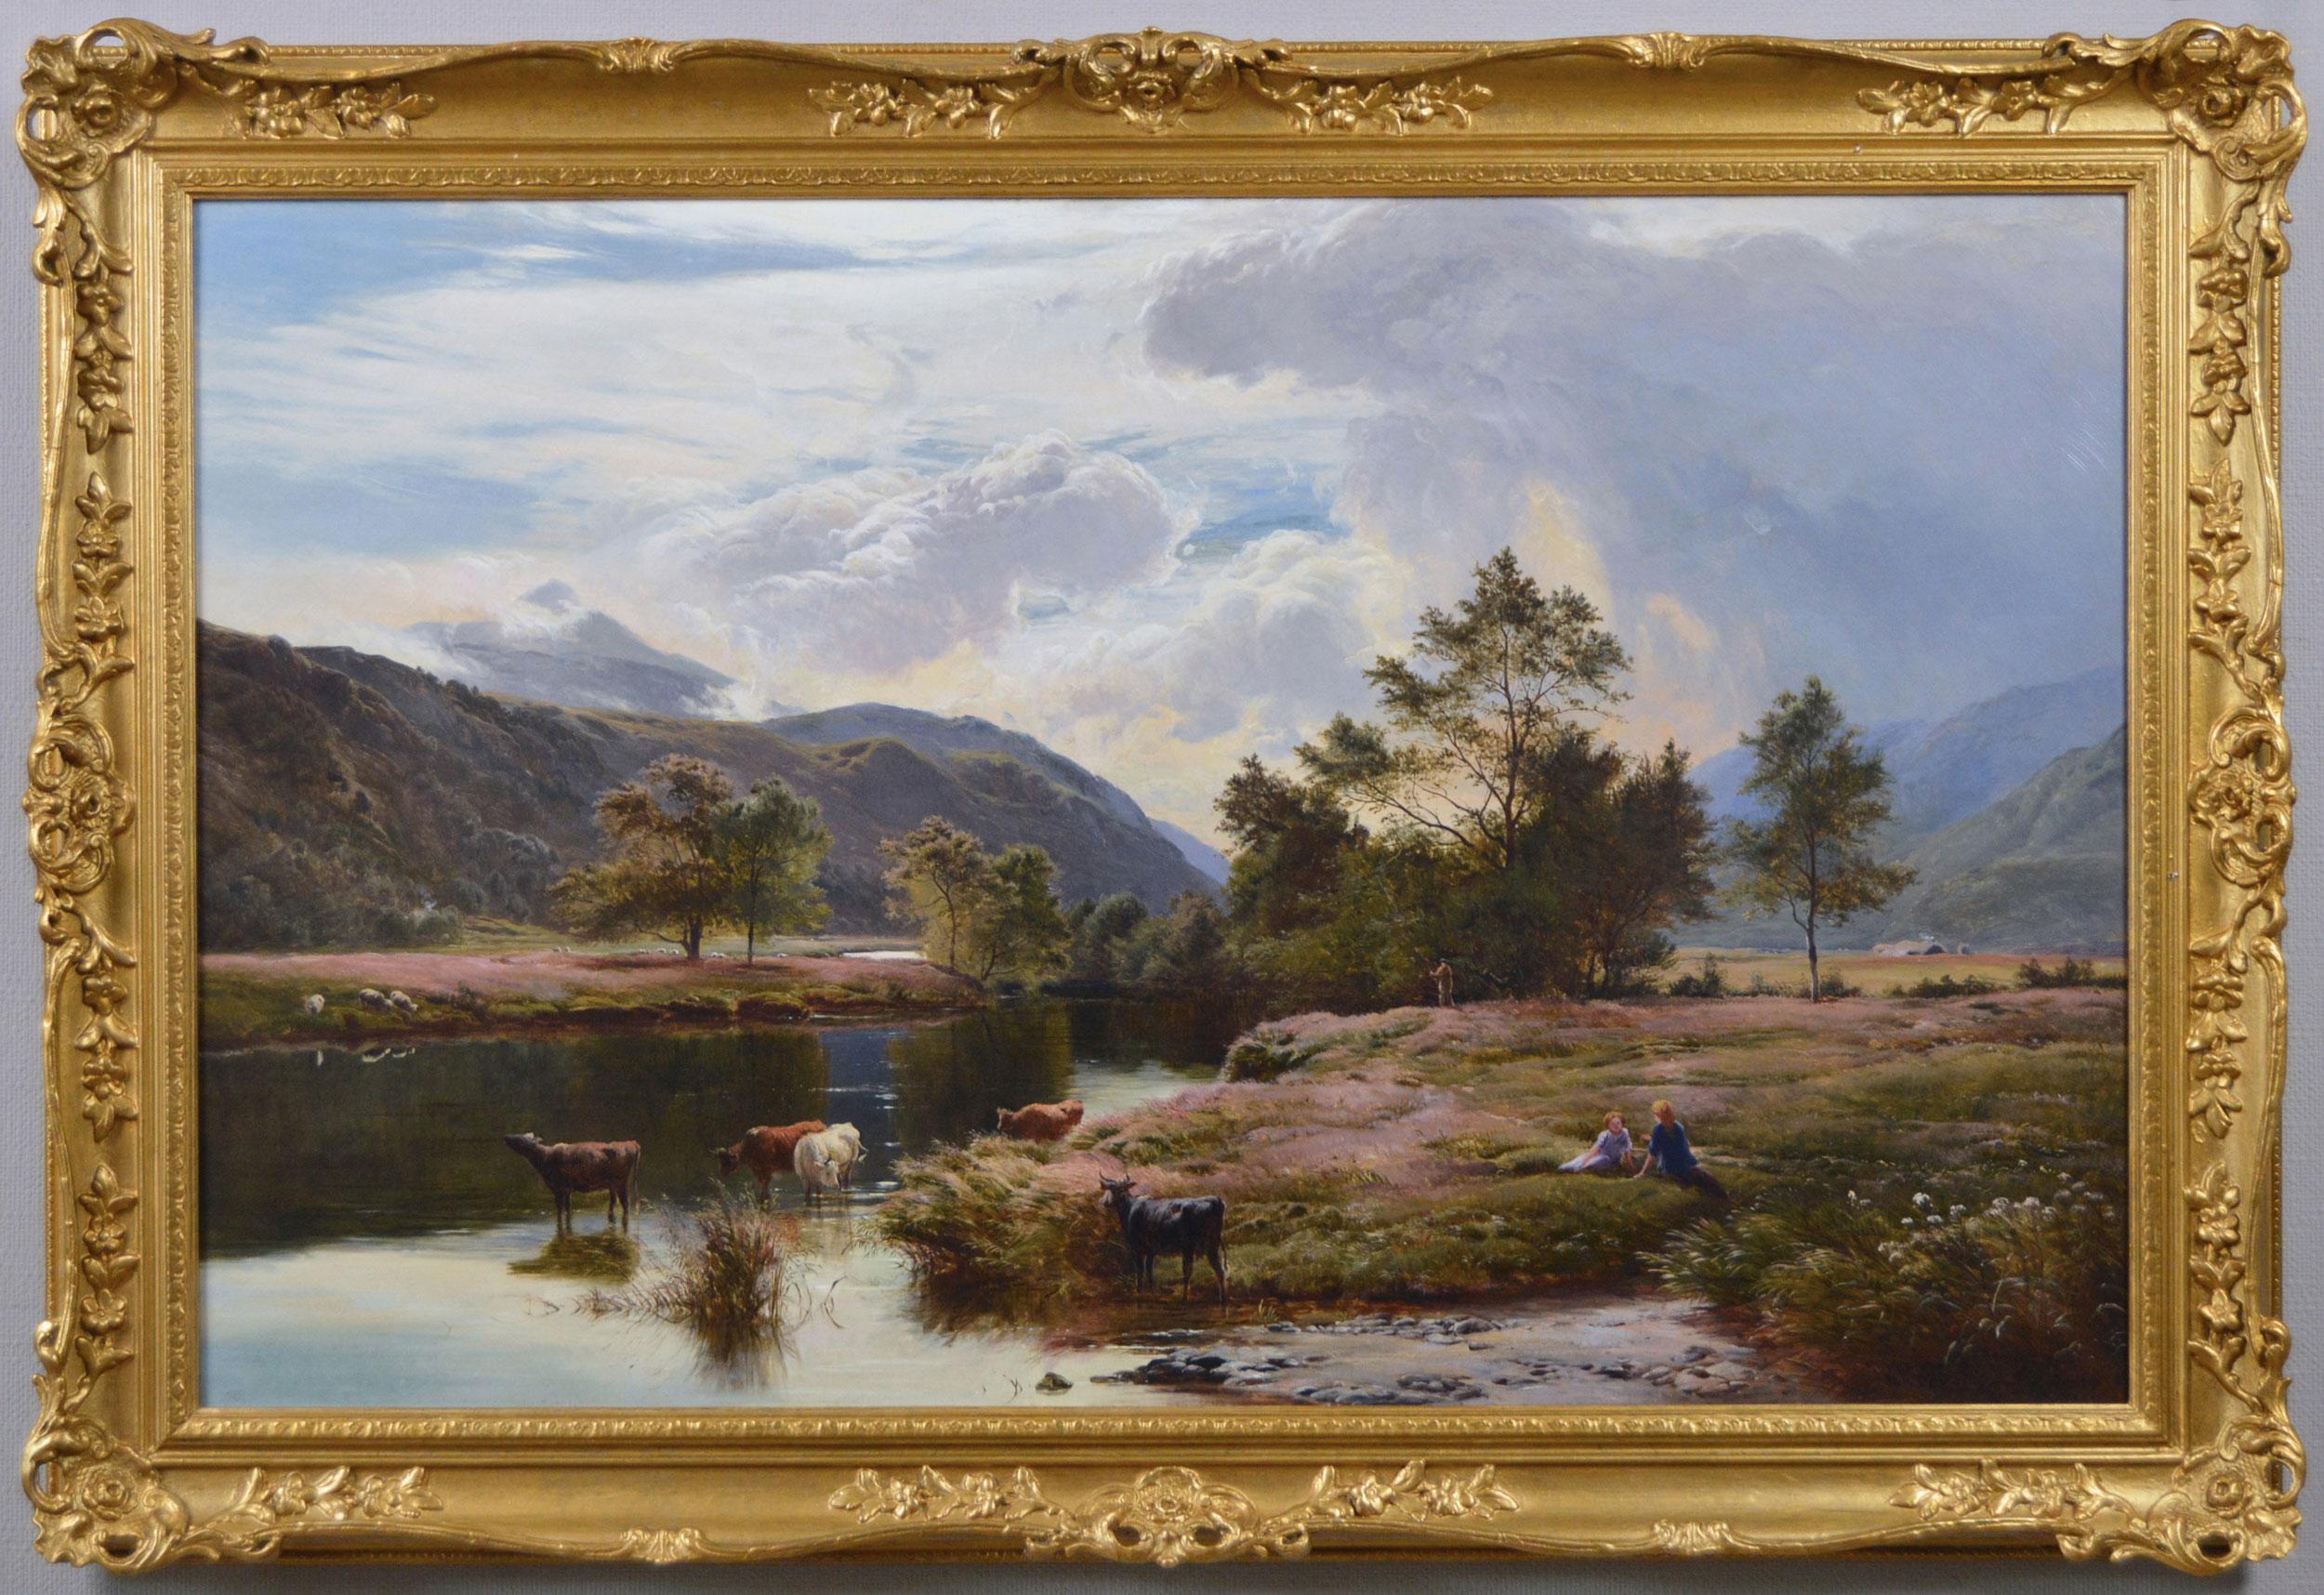 Landscape Painting Sidney Richard Percy - Peinture à l'huile du 19e siècle représentant un paysage fluvial écossais de Glen Falloch